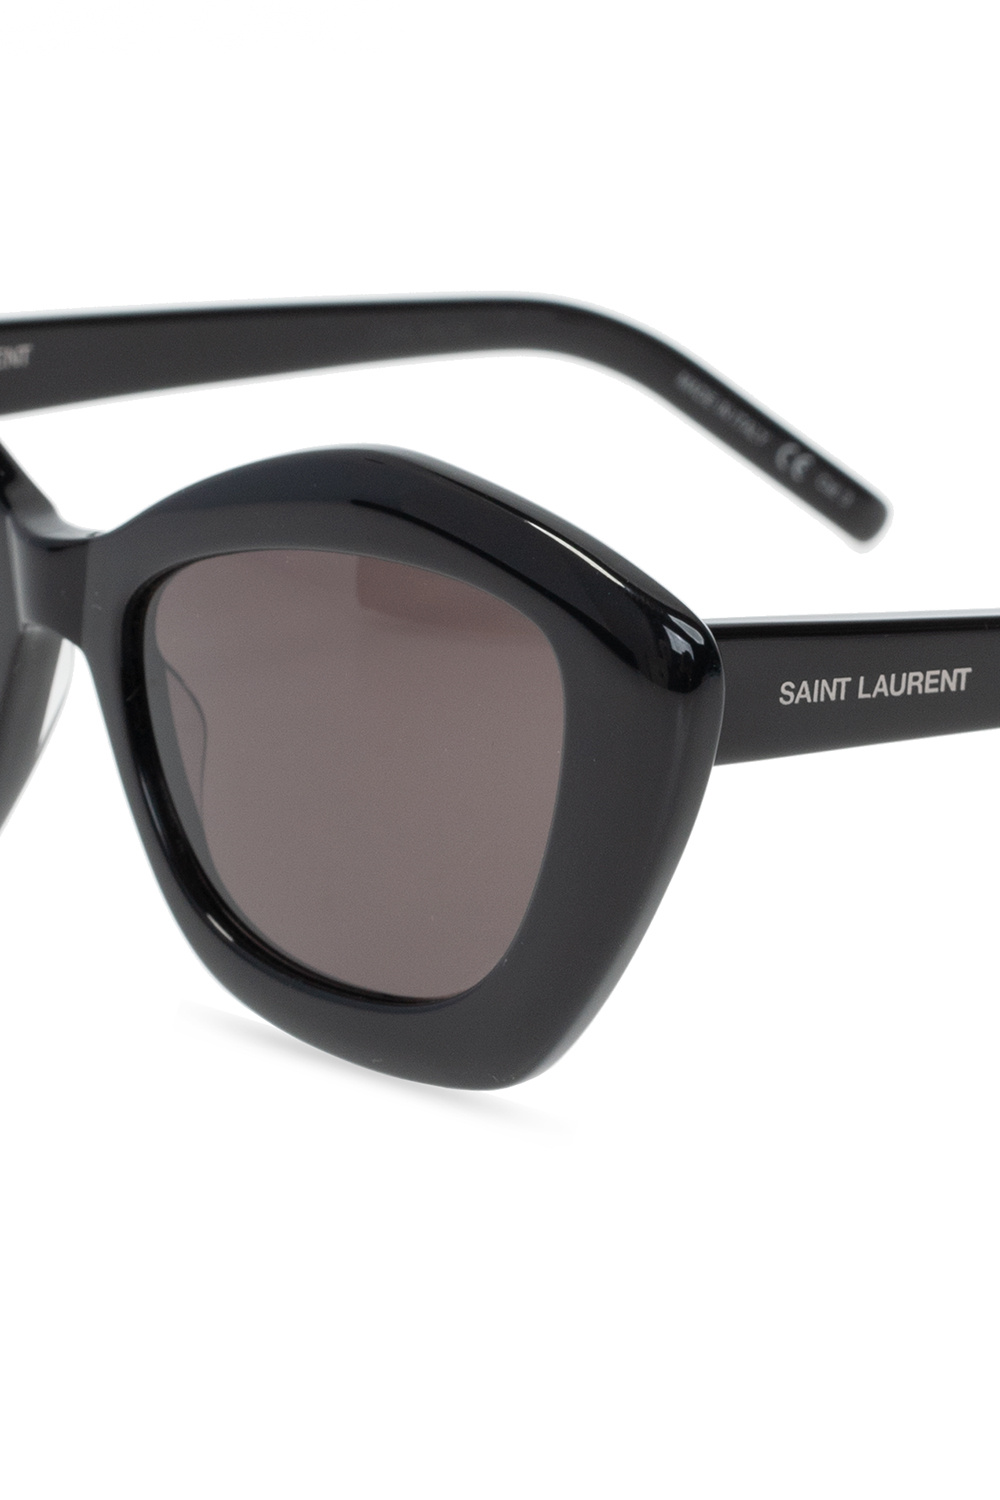 Saint Laurent ‘SL 68’ Dolce sunglasses